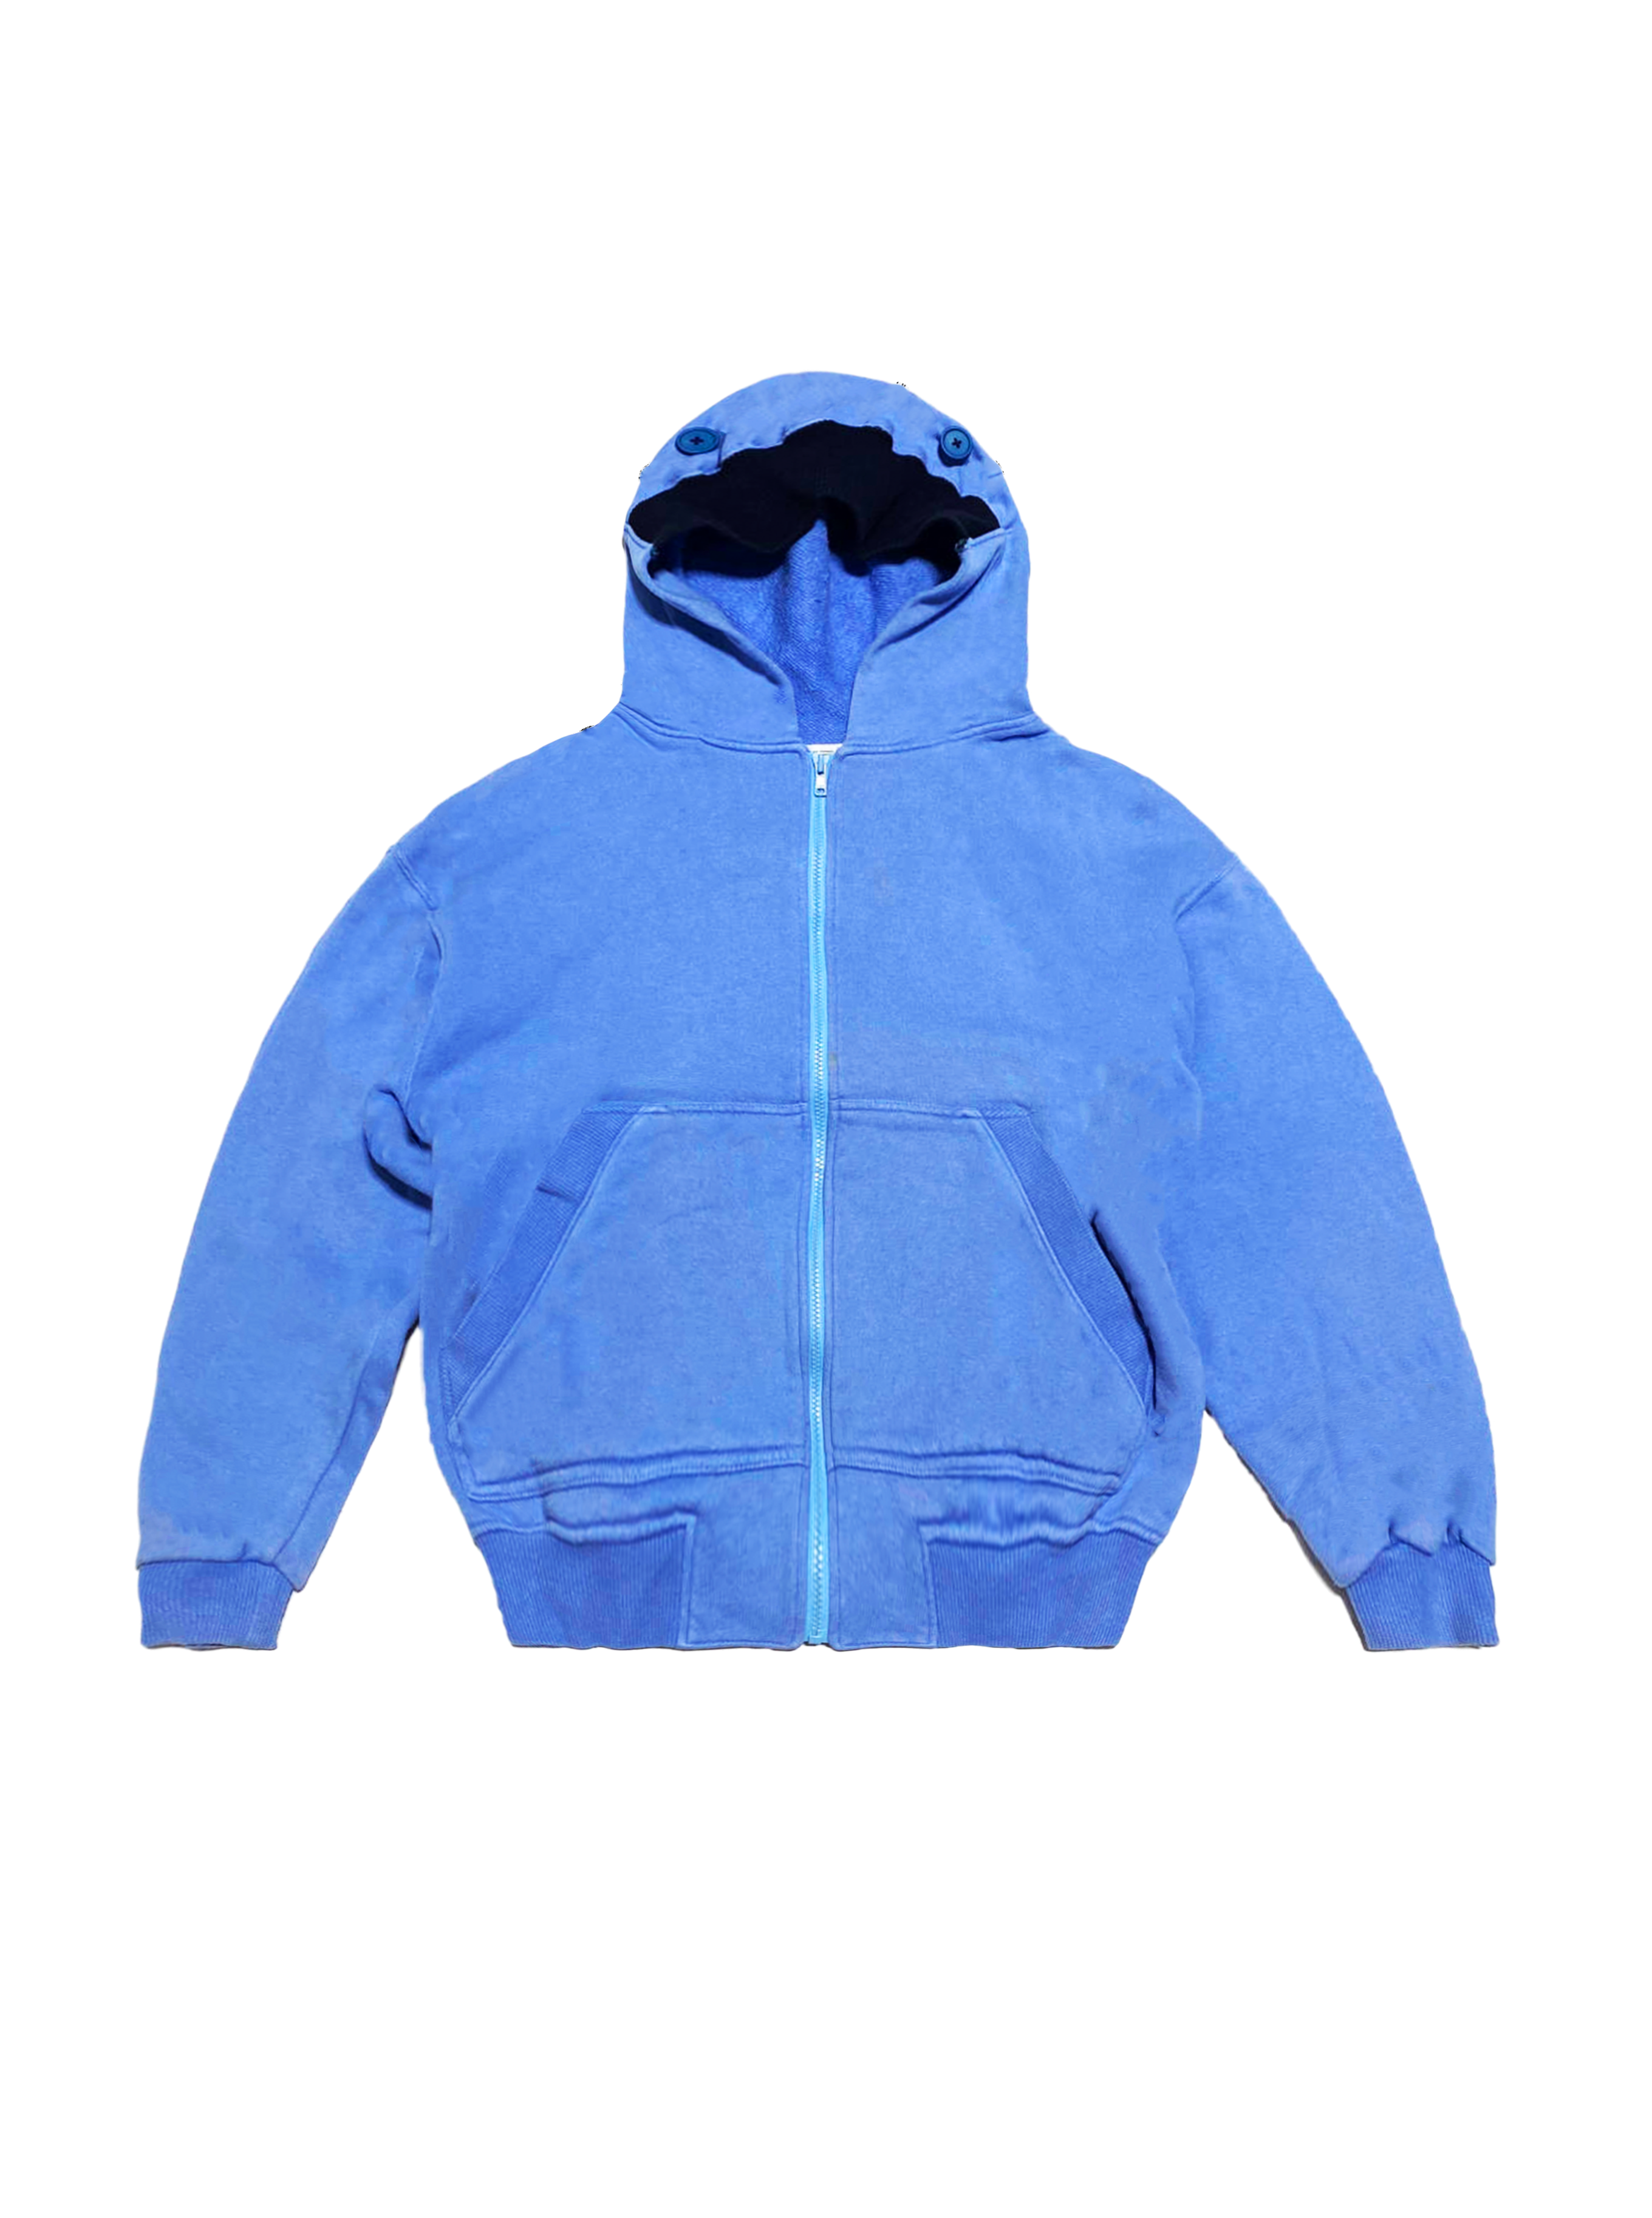 Issey Miyake 2000s Sport Blue Hoodie Zip Jacket